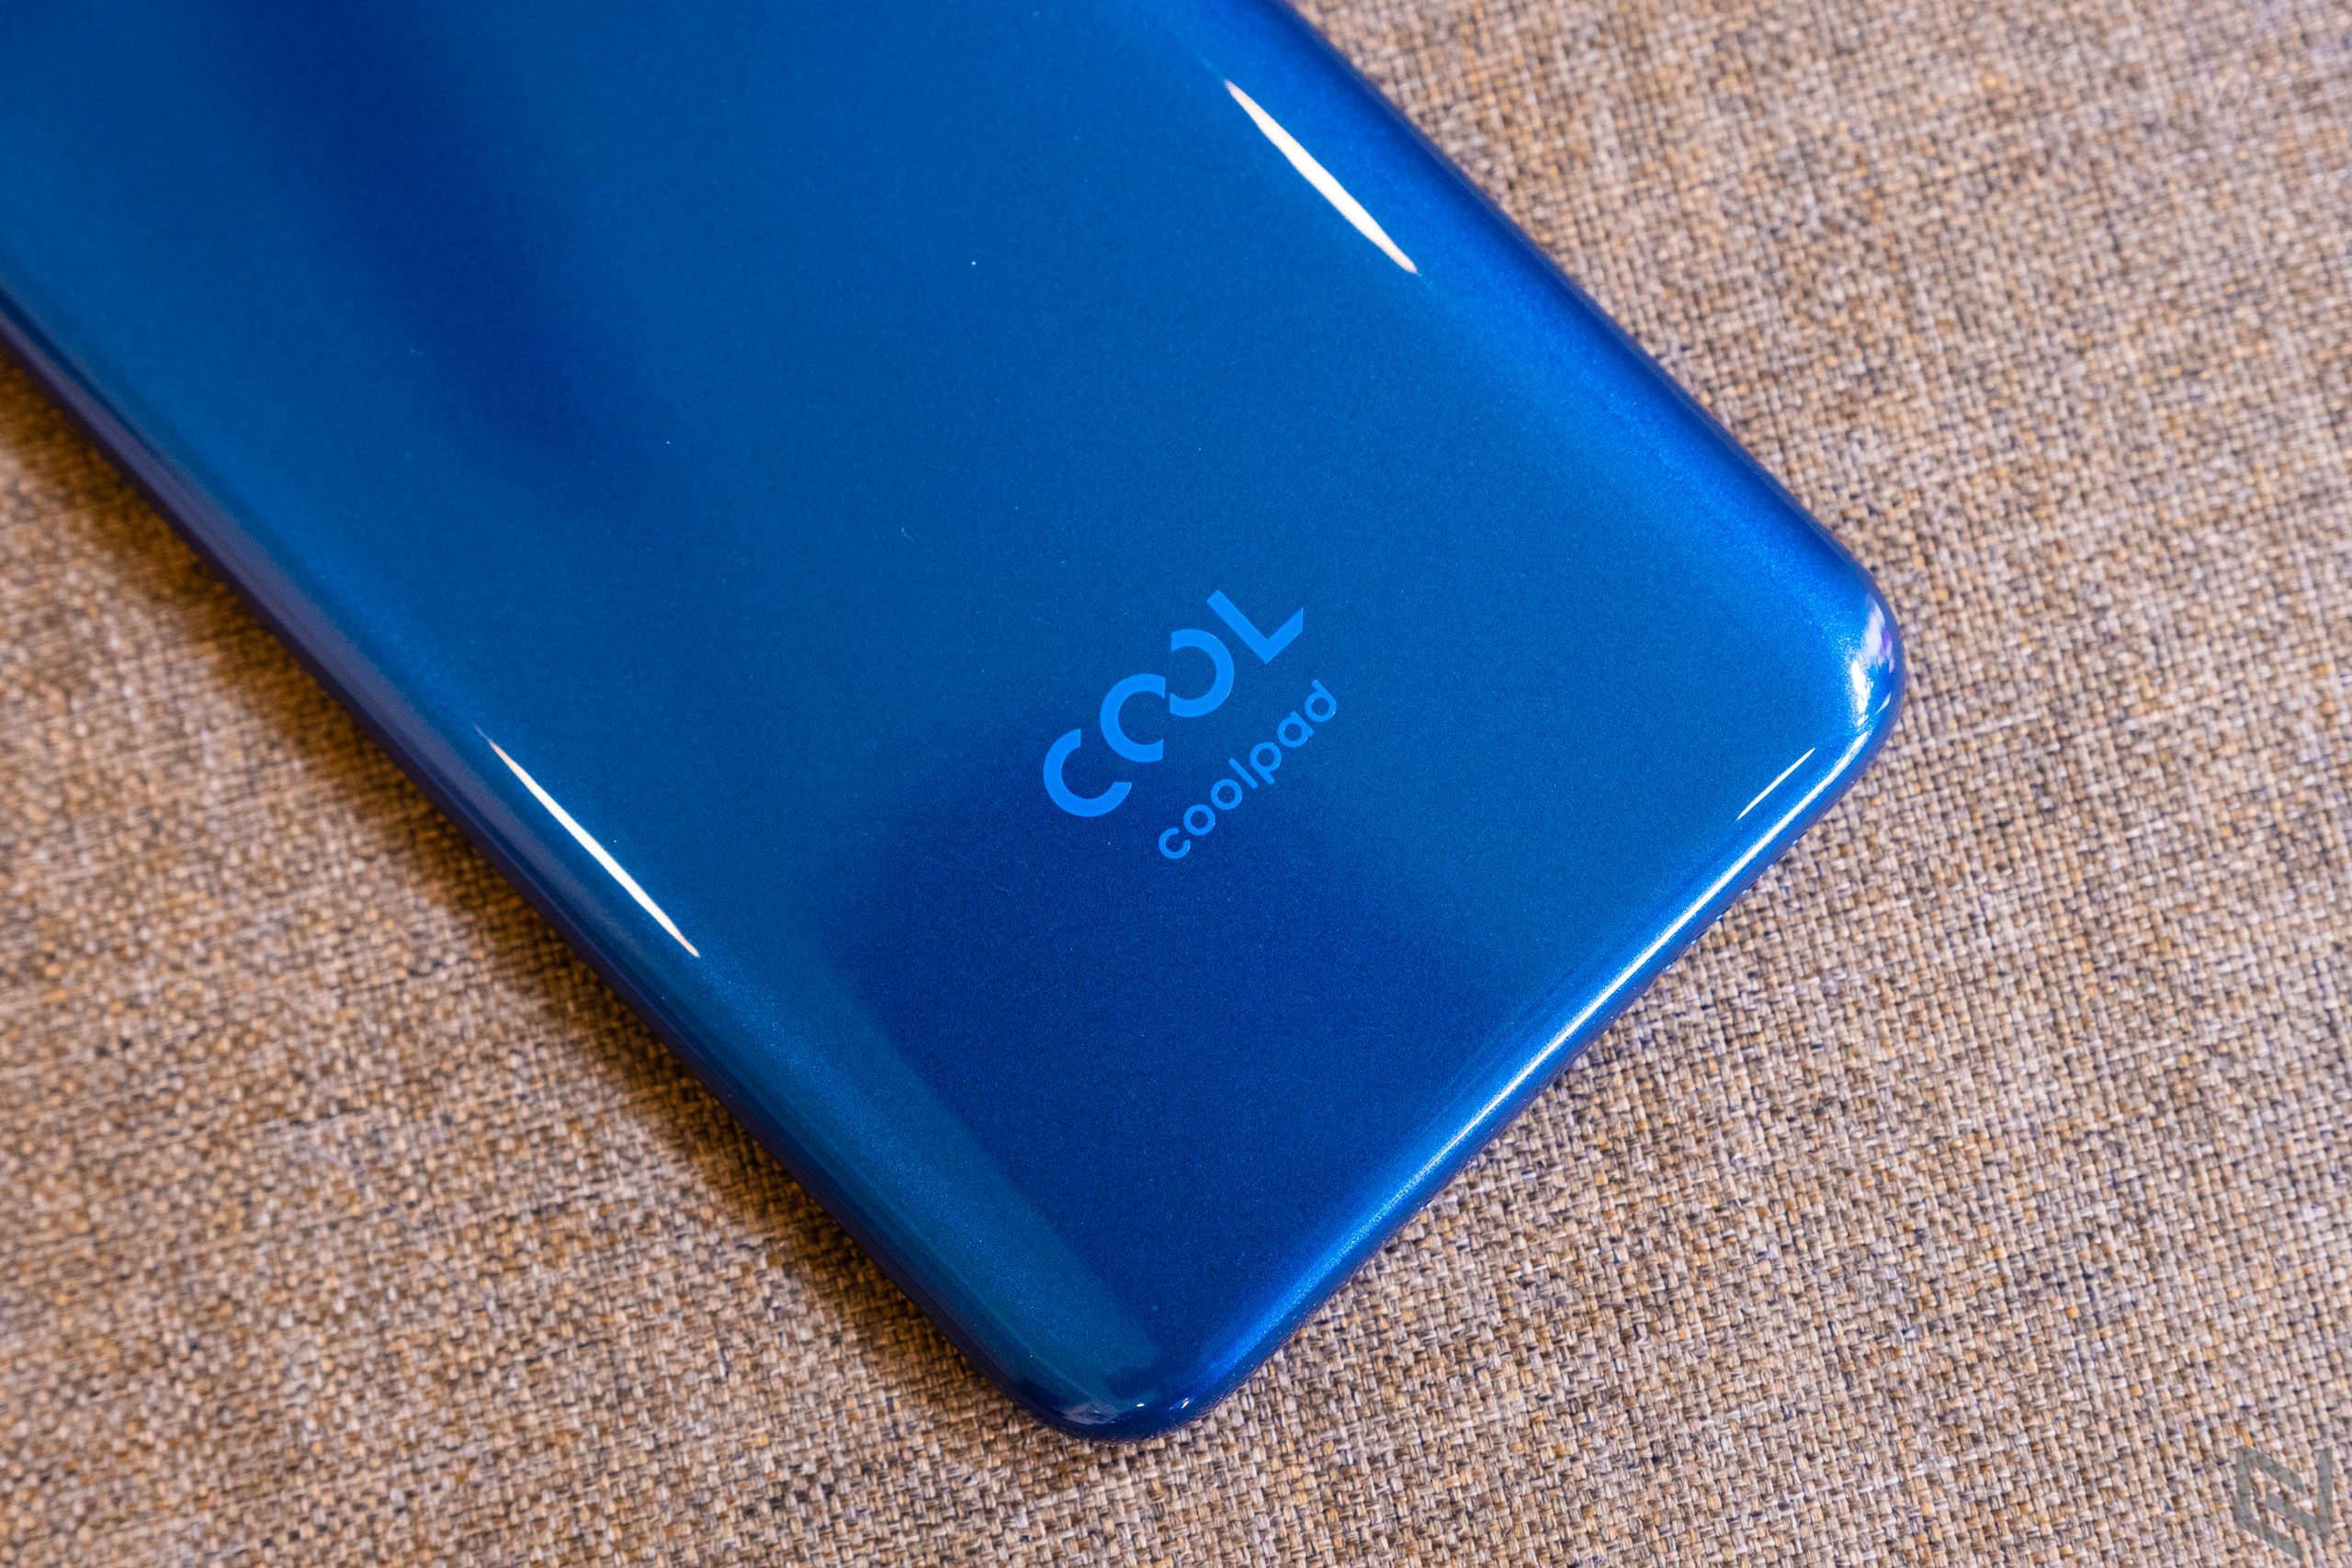 Đánh giá Coolpad N5: Thiết kế đẹp, camera đủ dùng, giá dưới 3 triệu